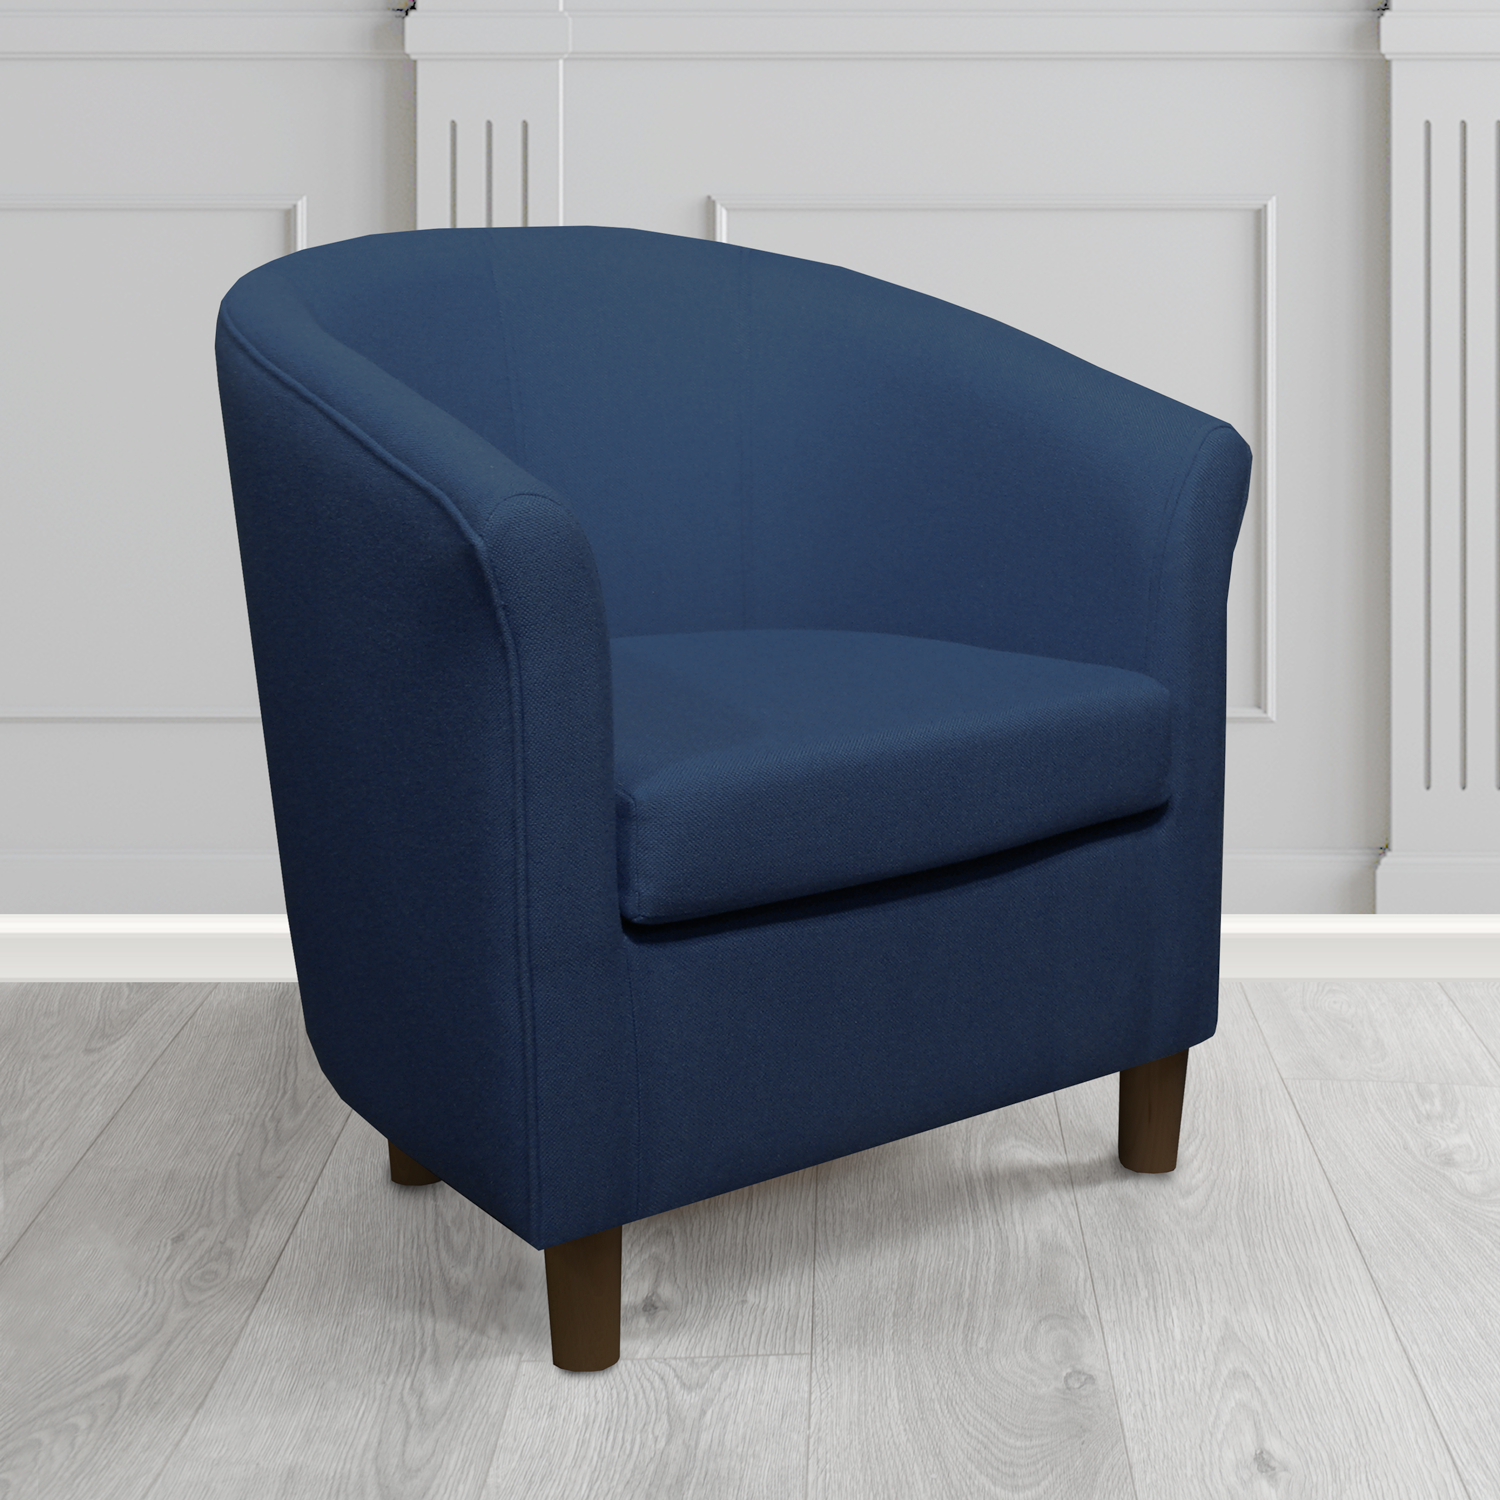 Tuscany Tub Chair in Mainline Plus Royal IF020 Crib 5 Fabric